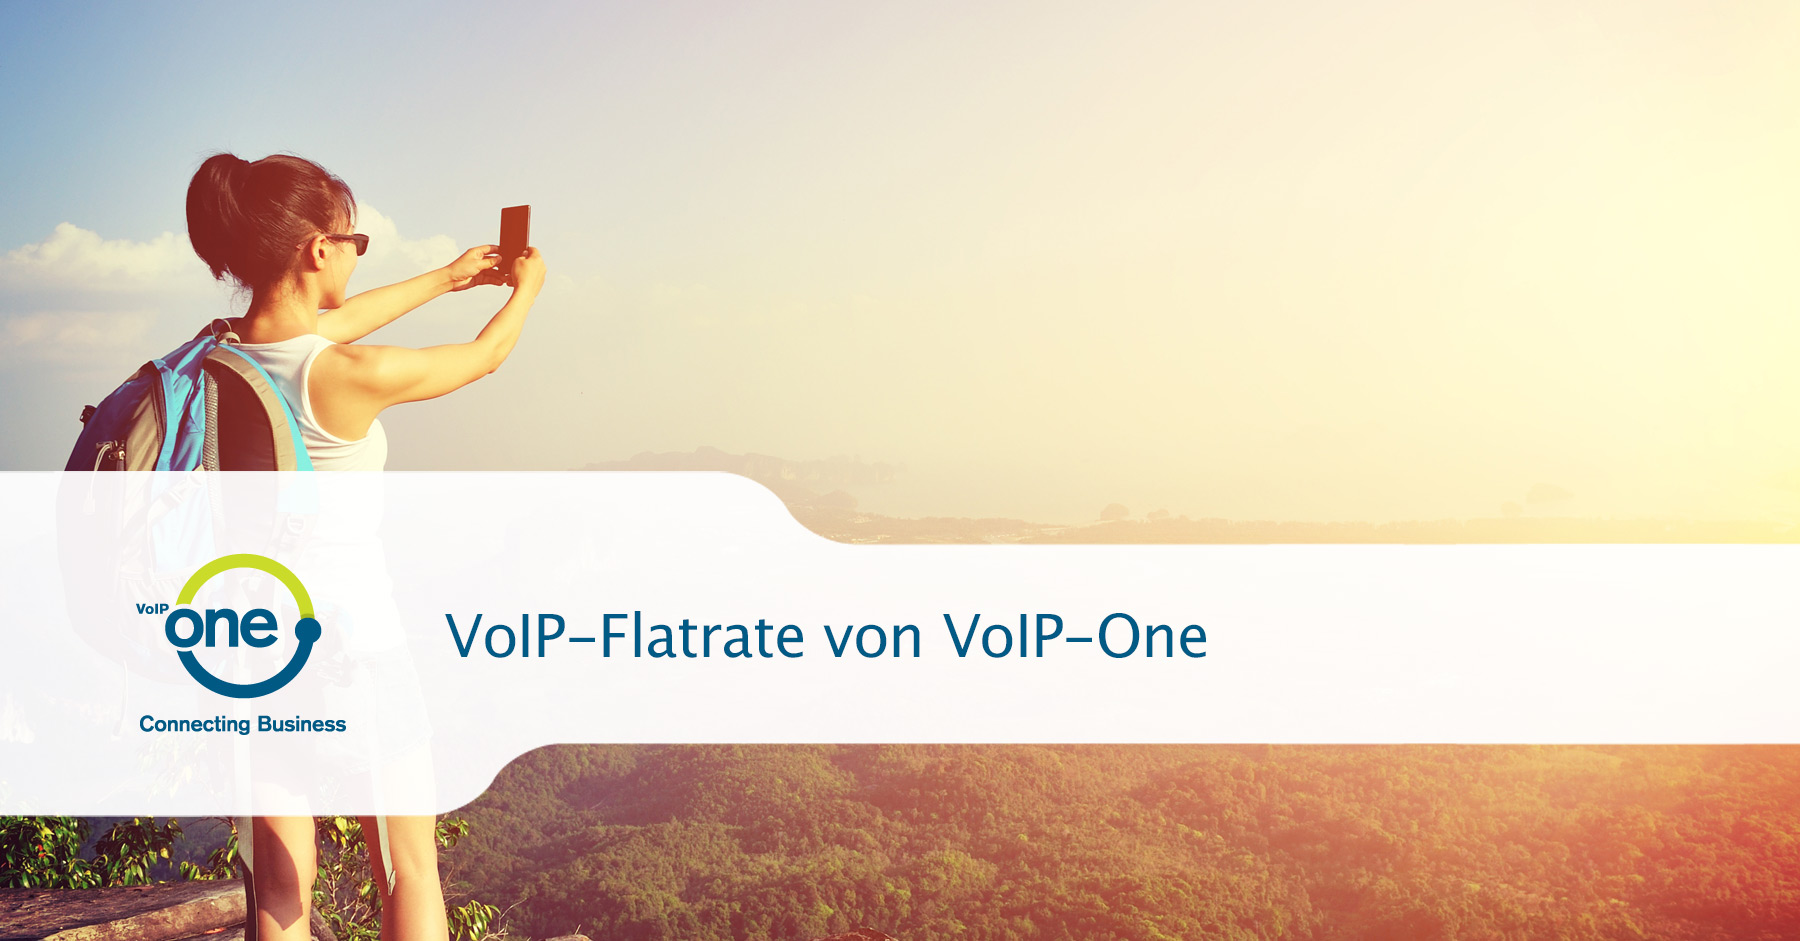 VoIP-Flatrate von VoIP-One